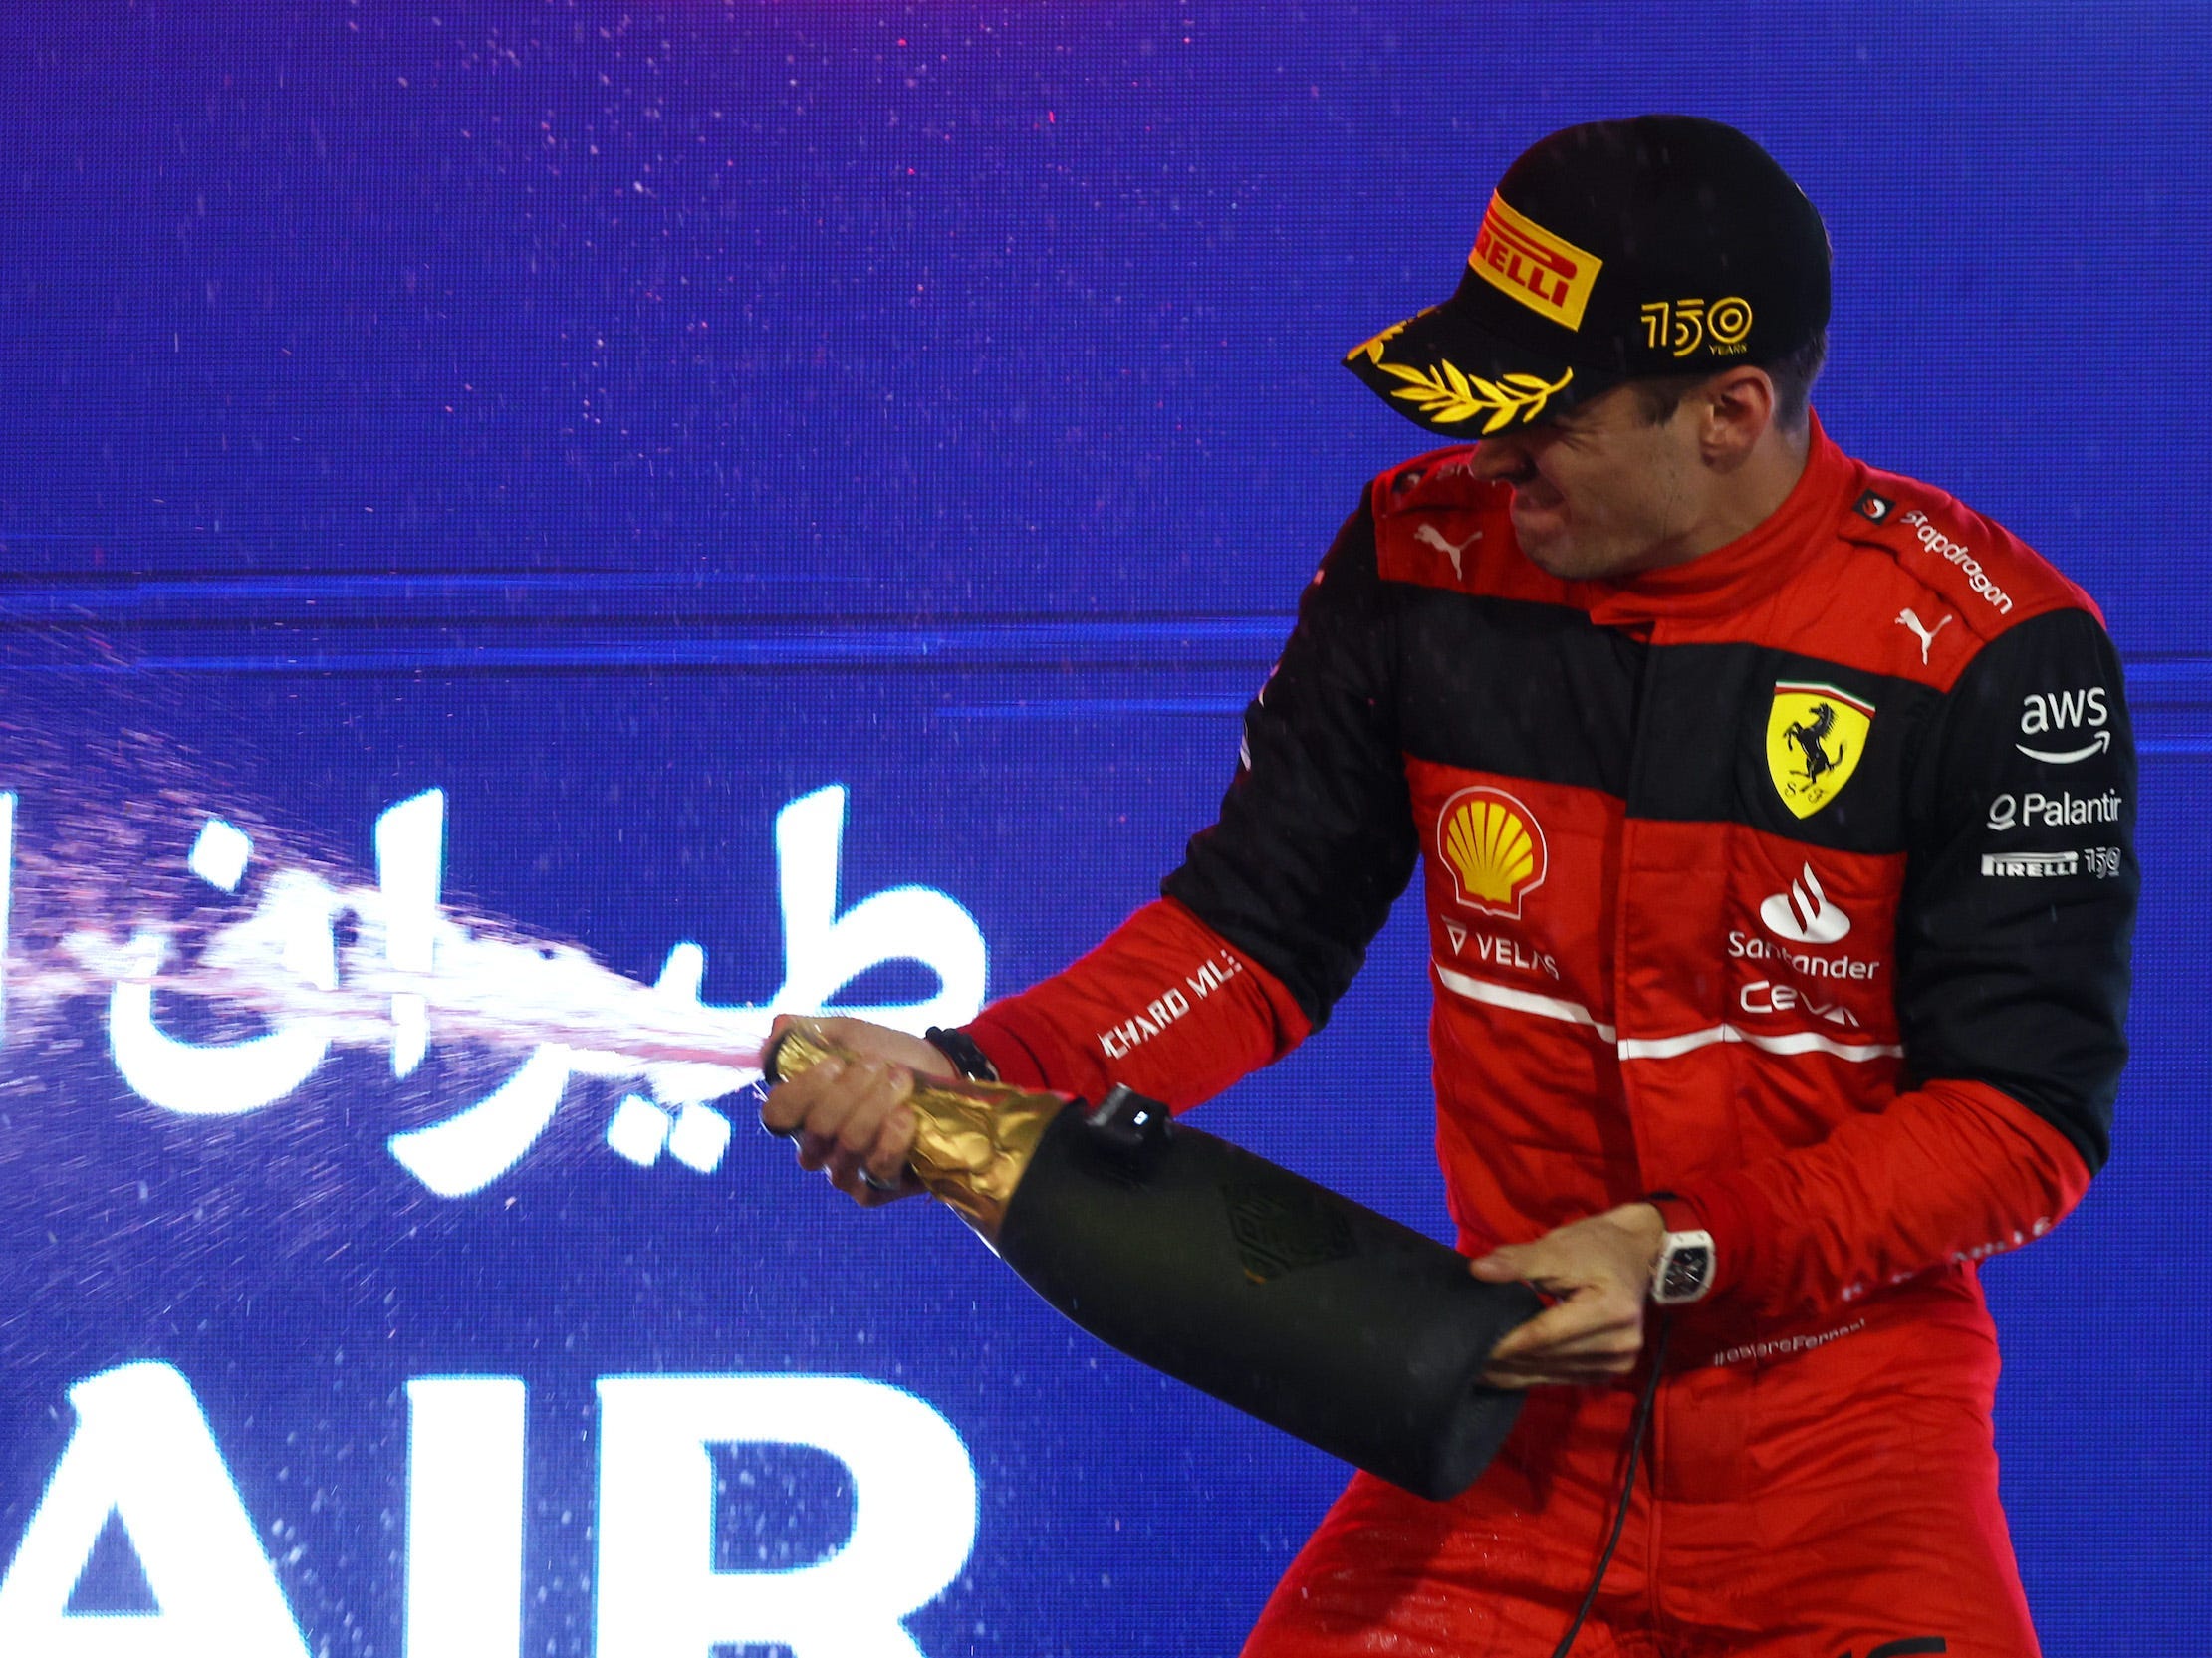 Charles Leclerc versprüht Champagner zur Feier, nachdem er den Auftakt der F1-Saison 2022 in Bahrain gewonnen hat.